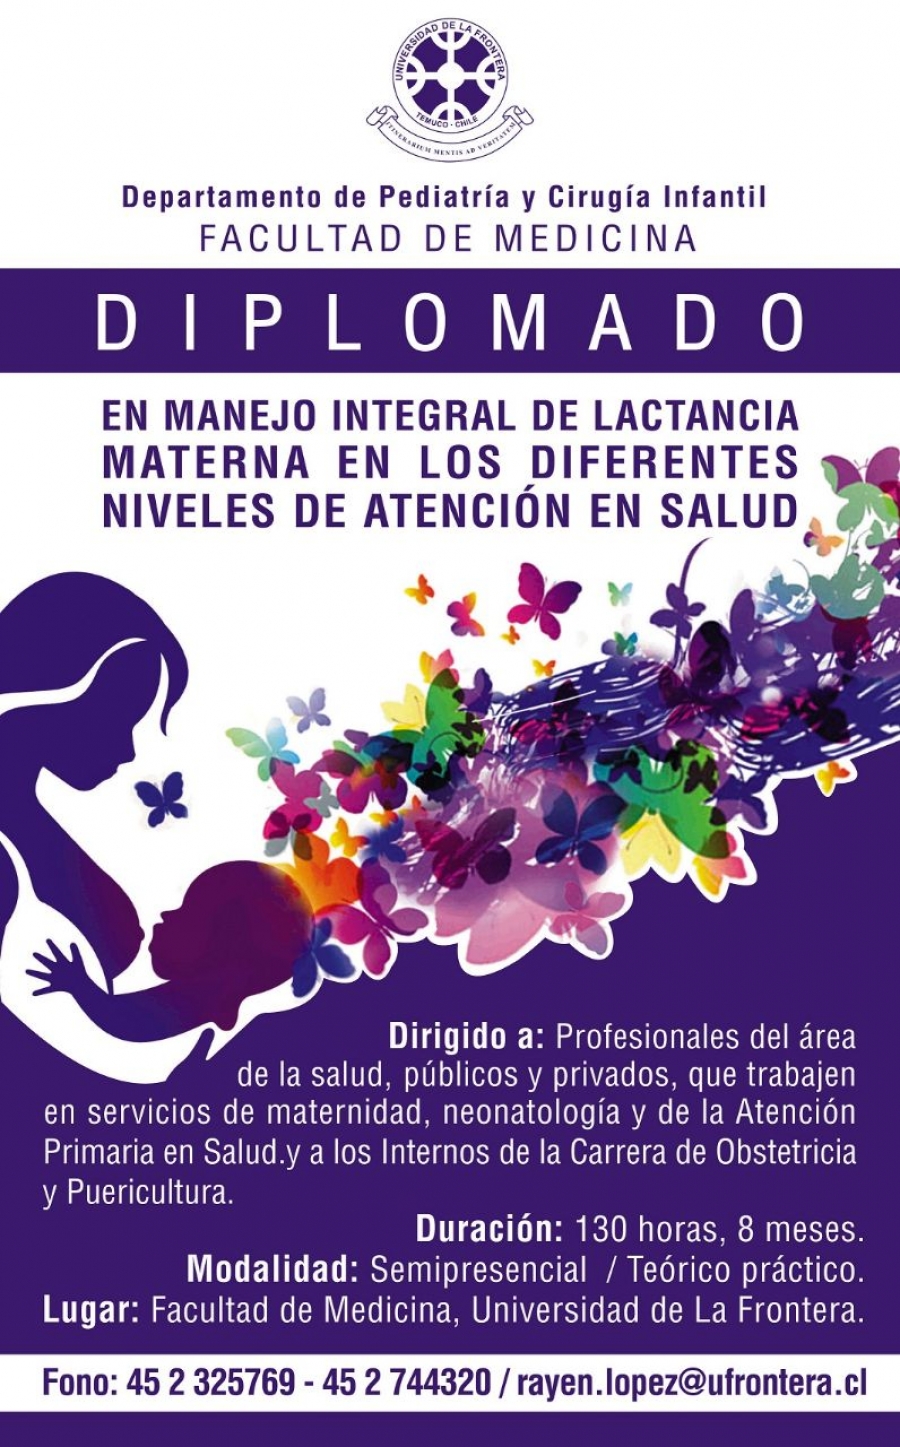 I Diplomado en el Manejo Integral de  Lactancia  Materna en los diferentes niveles de Atención en Salud, año 2018